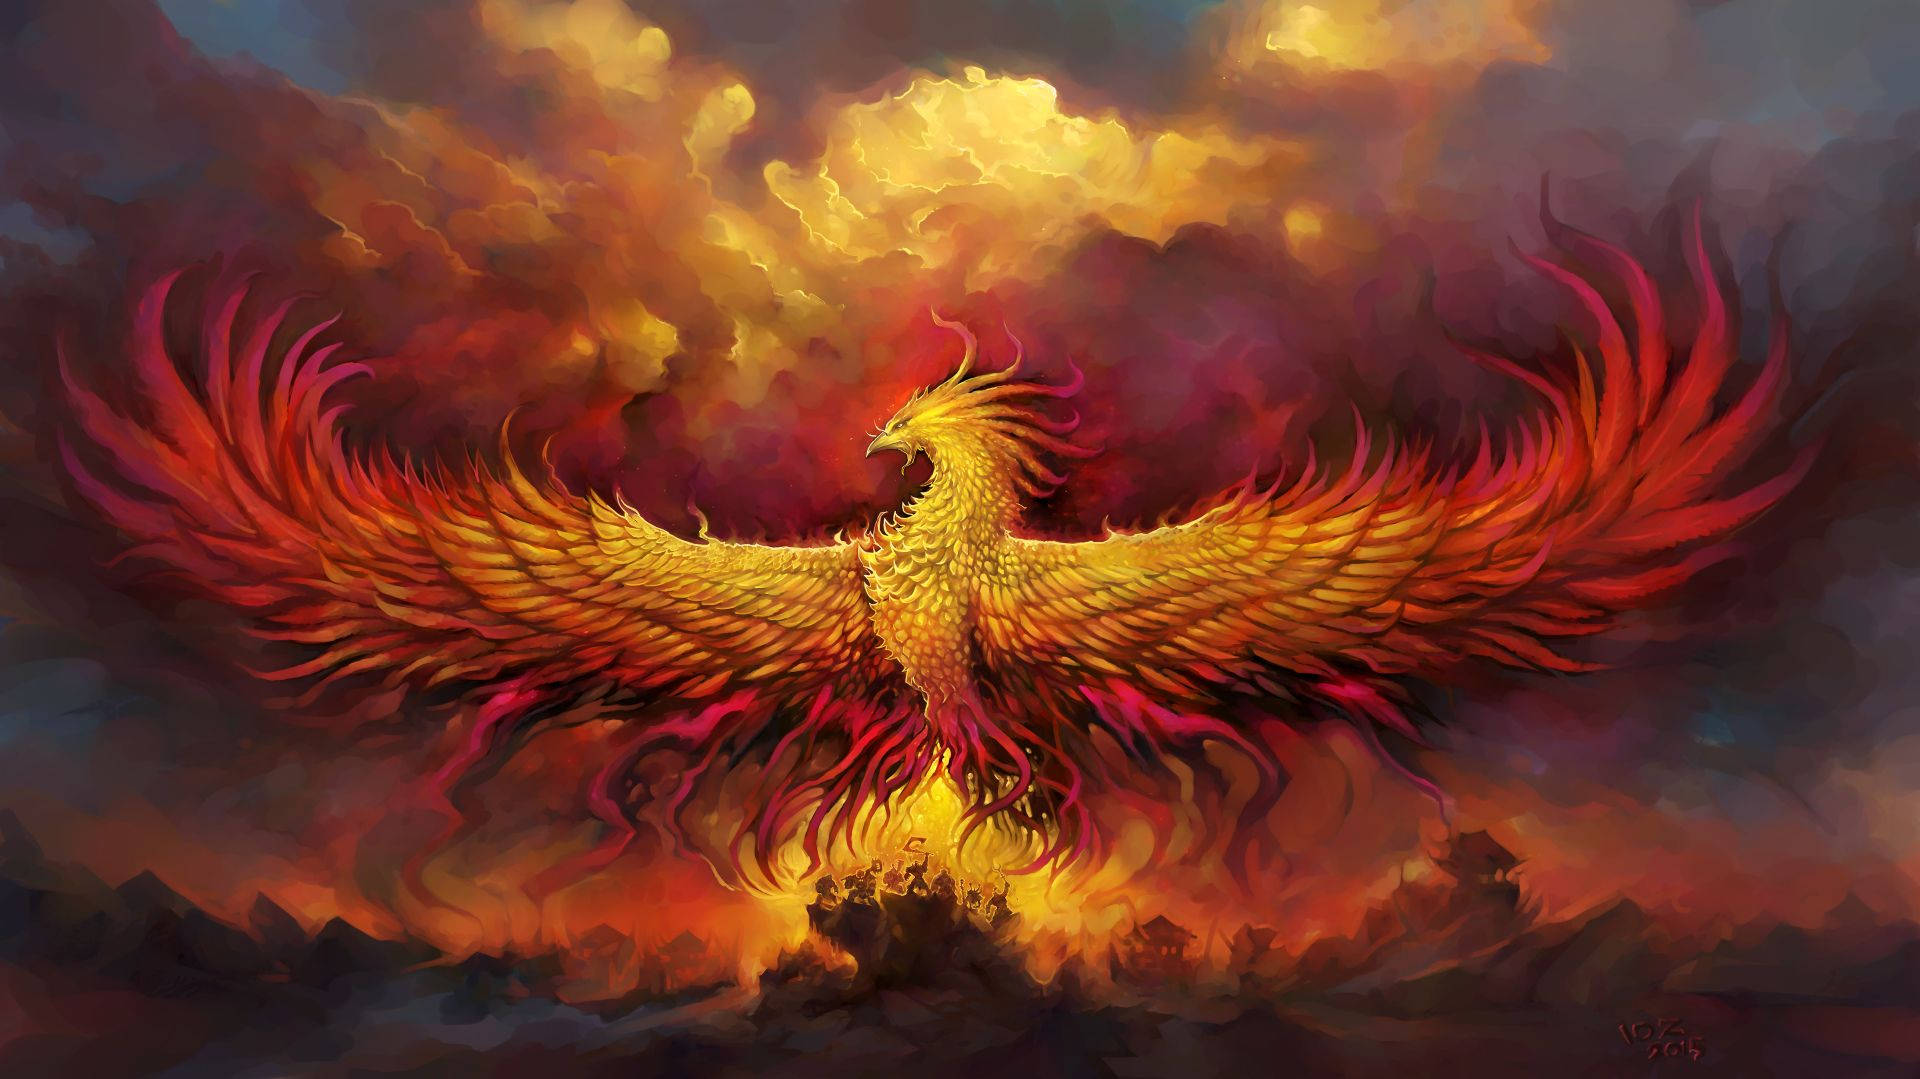 Majestic Phoenix's Fire Wings